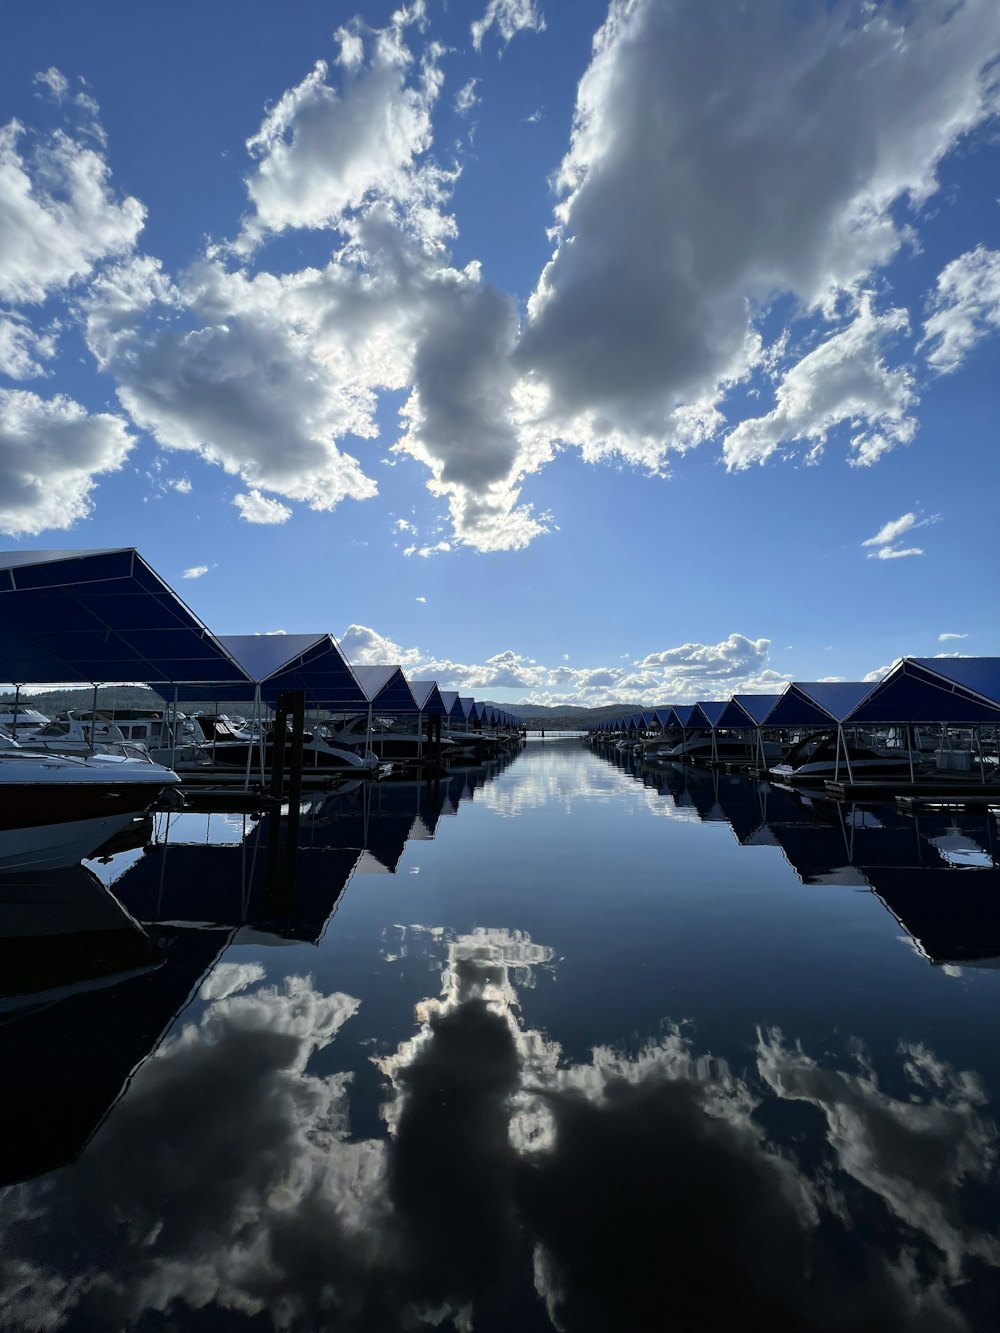 Uno specchio d'acqua circondato da barche sotto un cielo blu nuvoloso